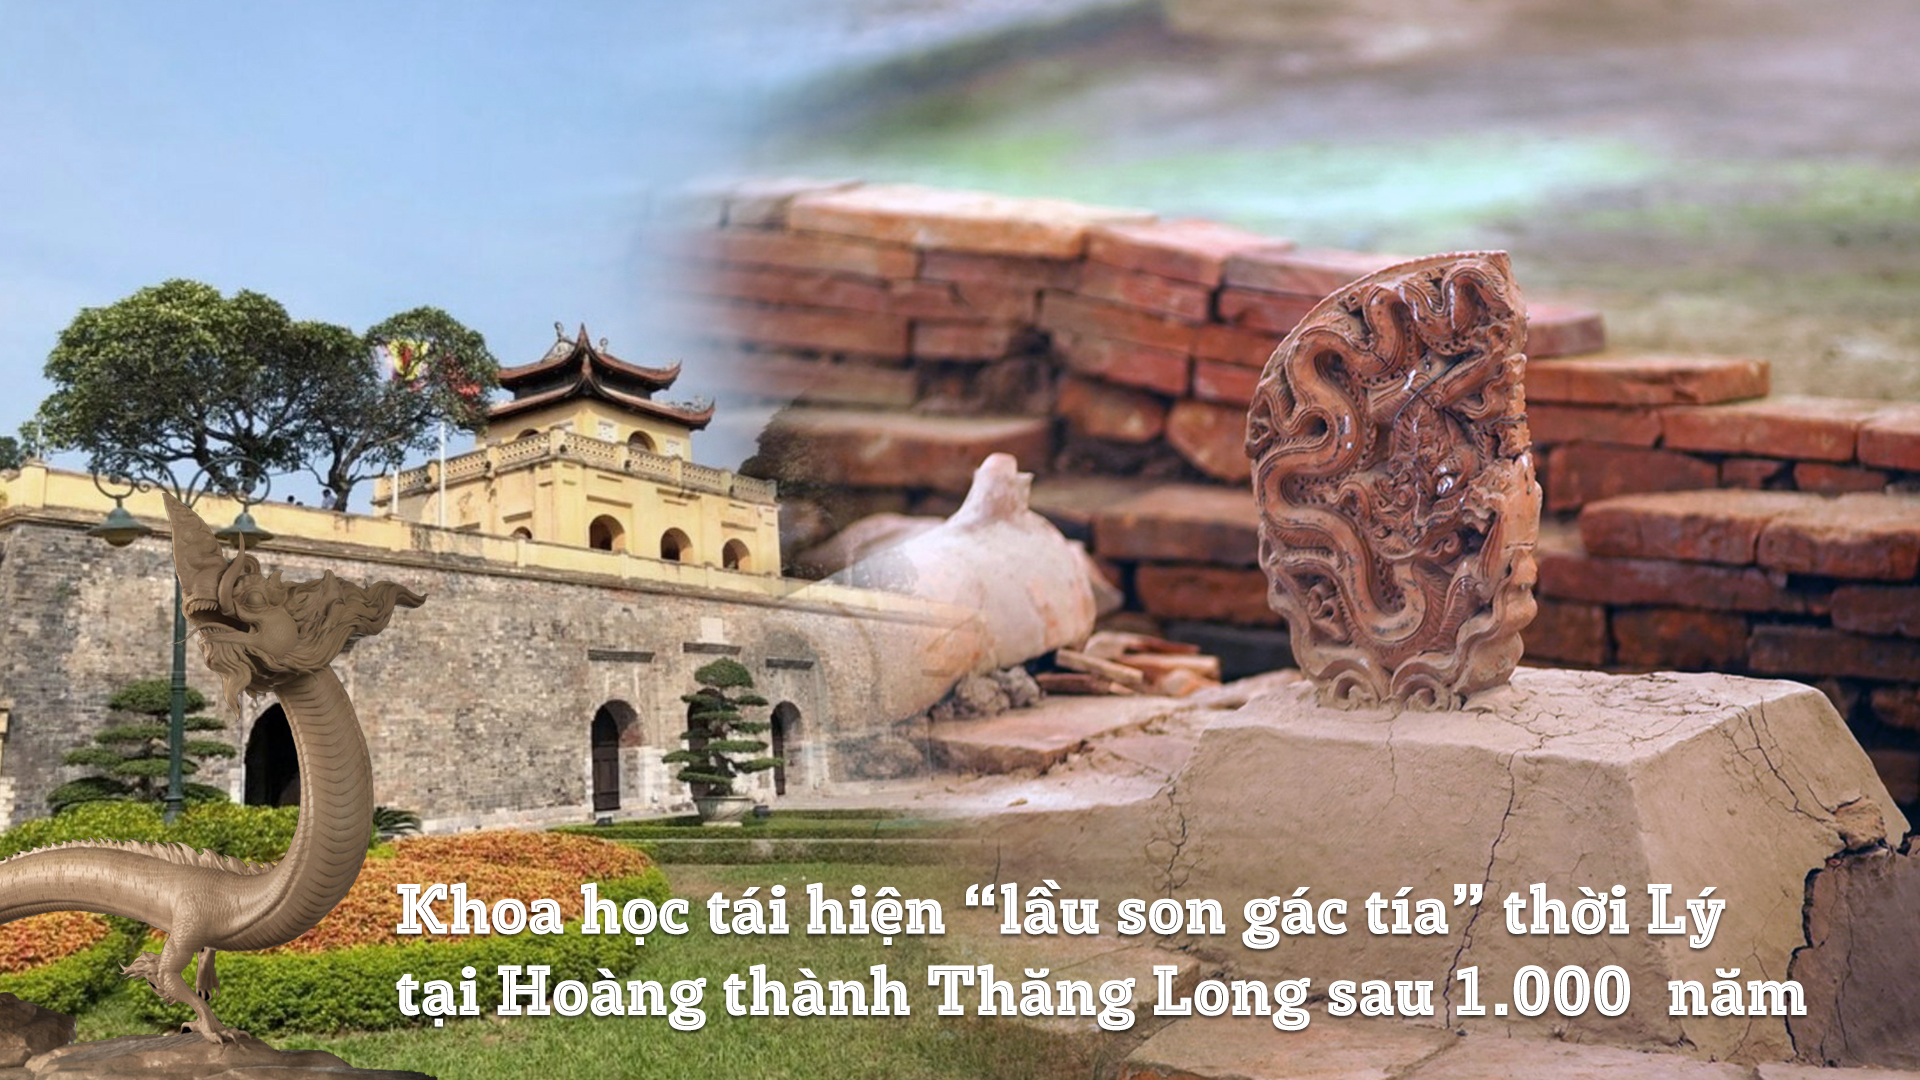 Hãy tìm hiểu về di sản văn hóa to lớn của Việt Nam với hình ảnh đẹp nhất về Hoàng thành Thăng Long. Đây là một trong những điểm đến tuyệt vời cho những ai muốn khám phá lịch sử và văn hóa của đất nước.